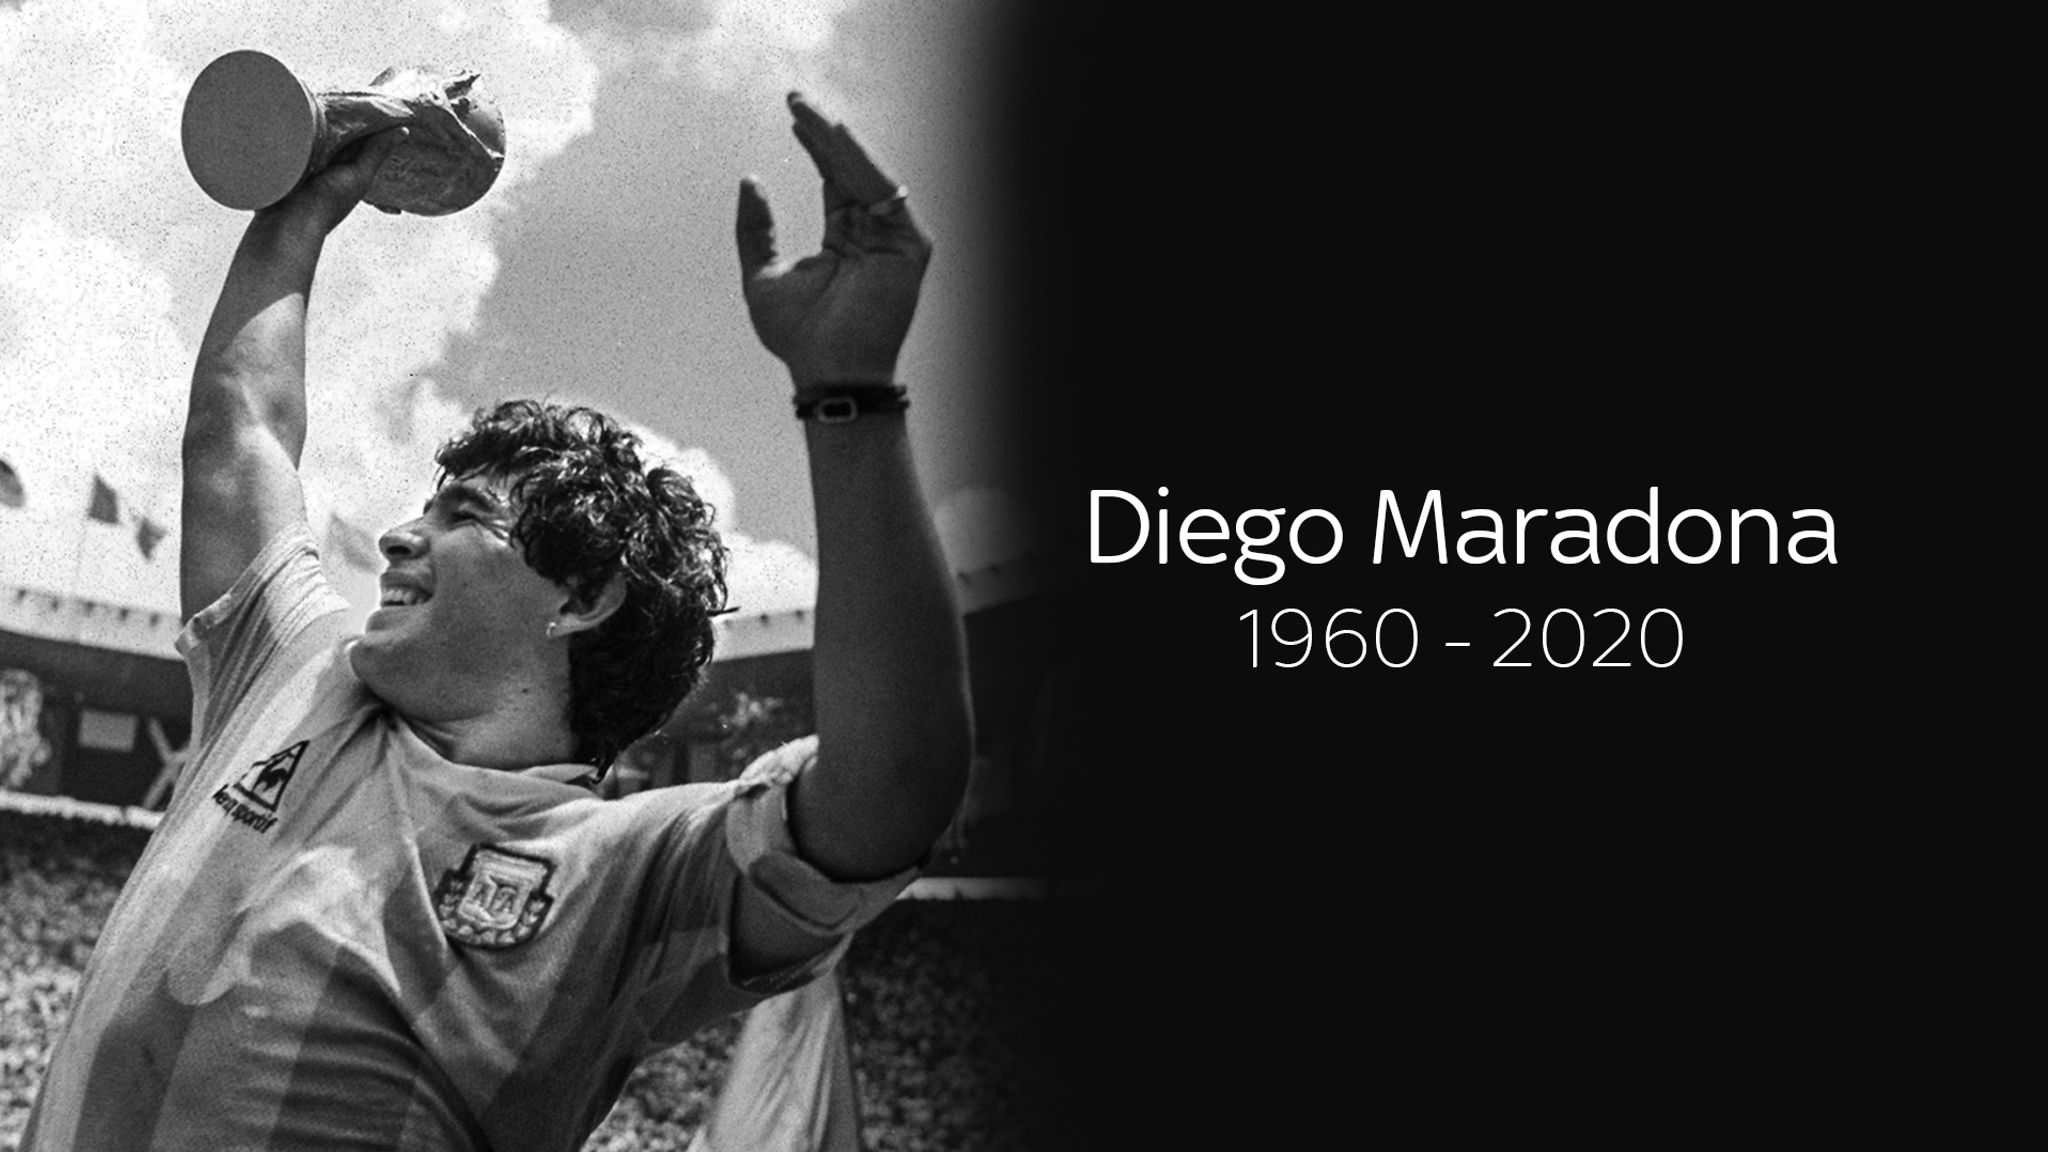 Download Diego Armando Maradona Wallpaper Pictures